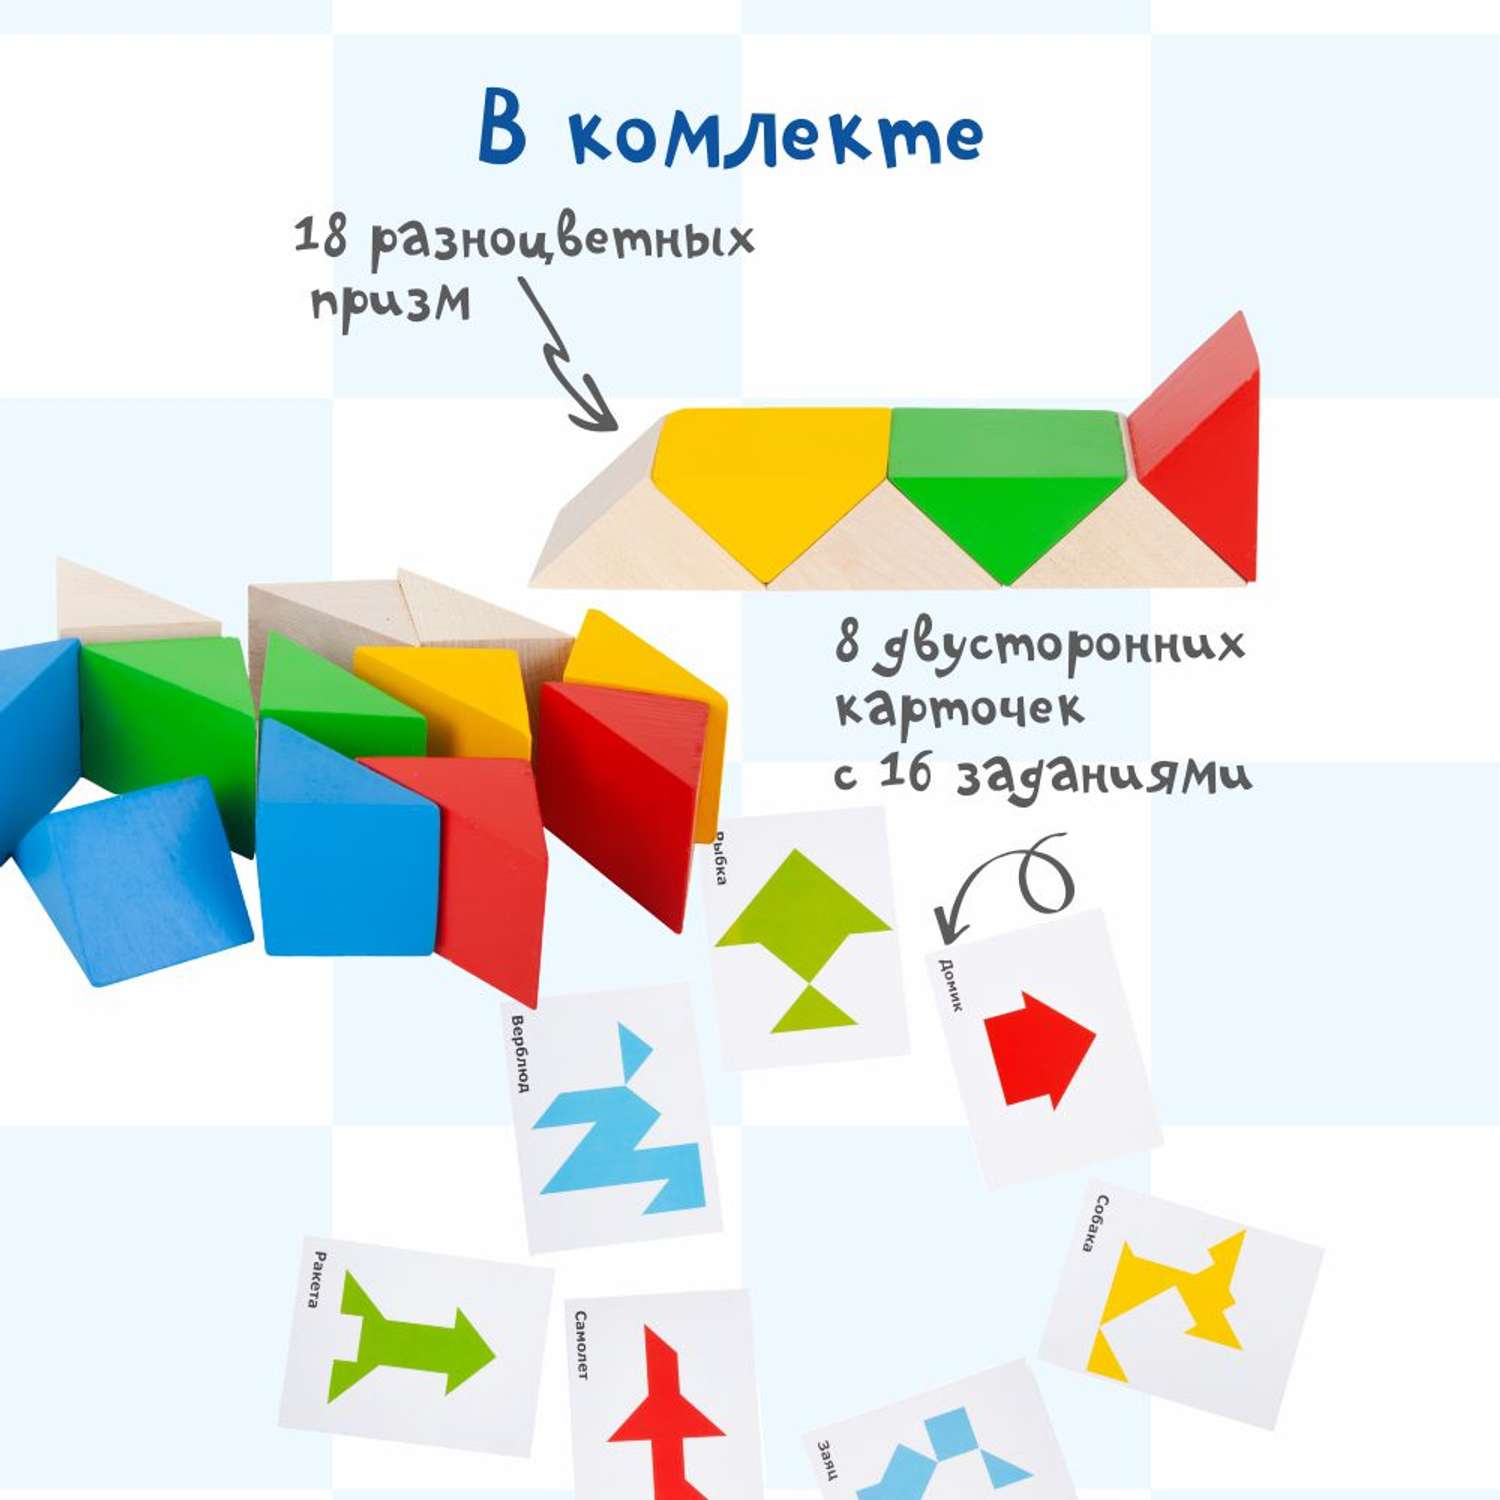 Обучающий набор Краснокамская игрушка Занимательные призмы - фото 2